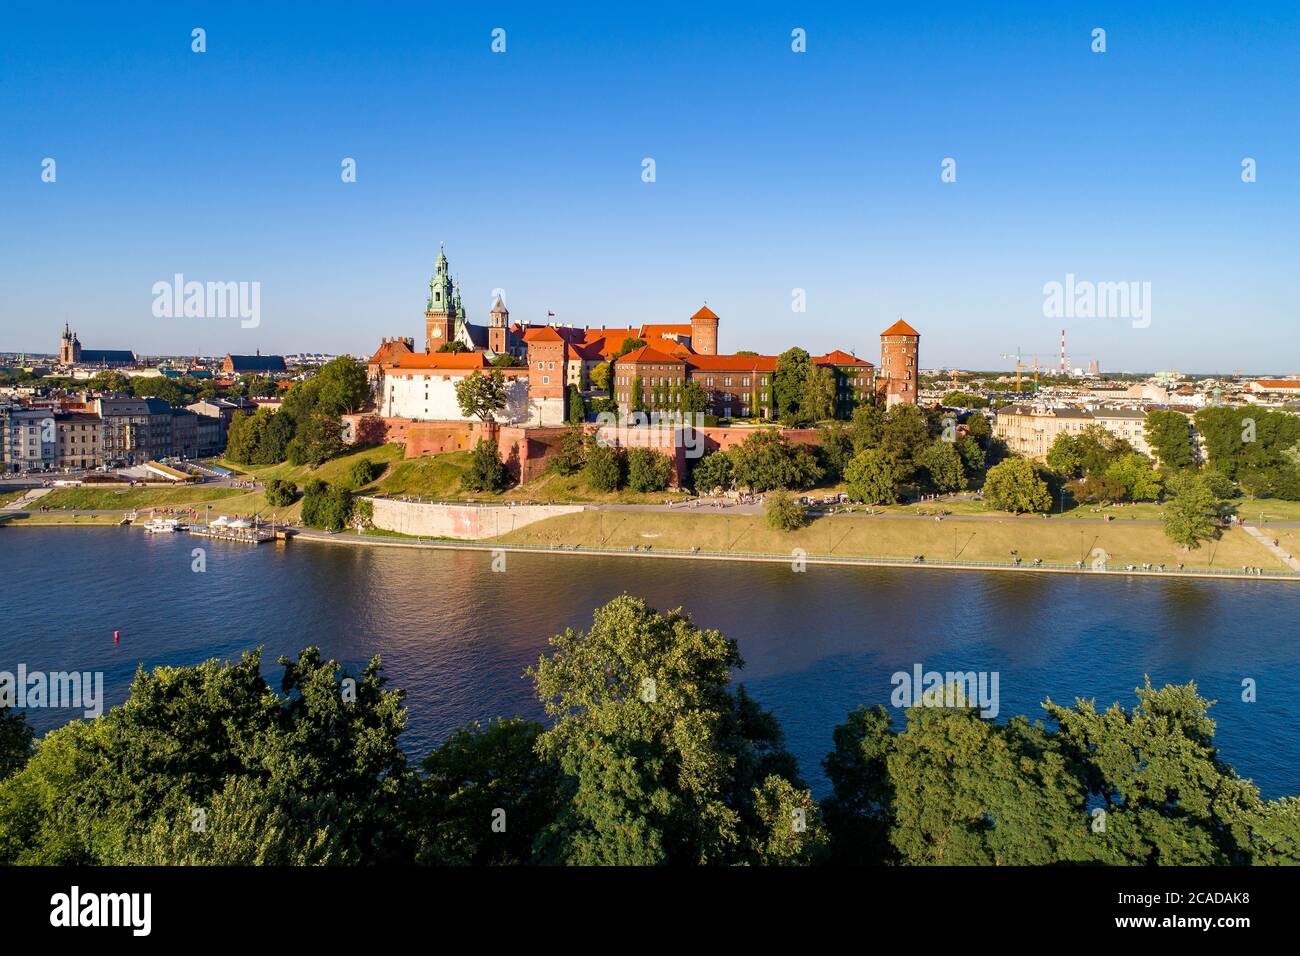 Krakau, Polen. Wawel Hill mit königlicher Kathedrale und Schloss. Luftaufnahme bei Sonnenuntergang. Weichsel. Flussufer mit Bäumen, Promenaden und Parks Stockfoto